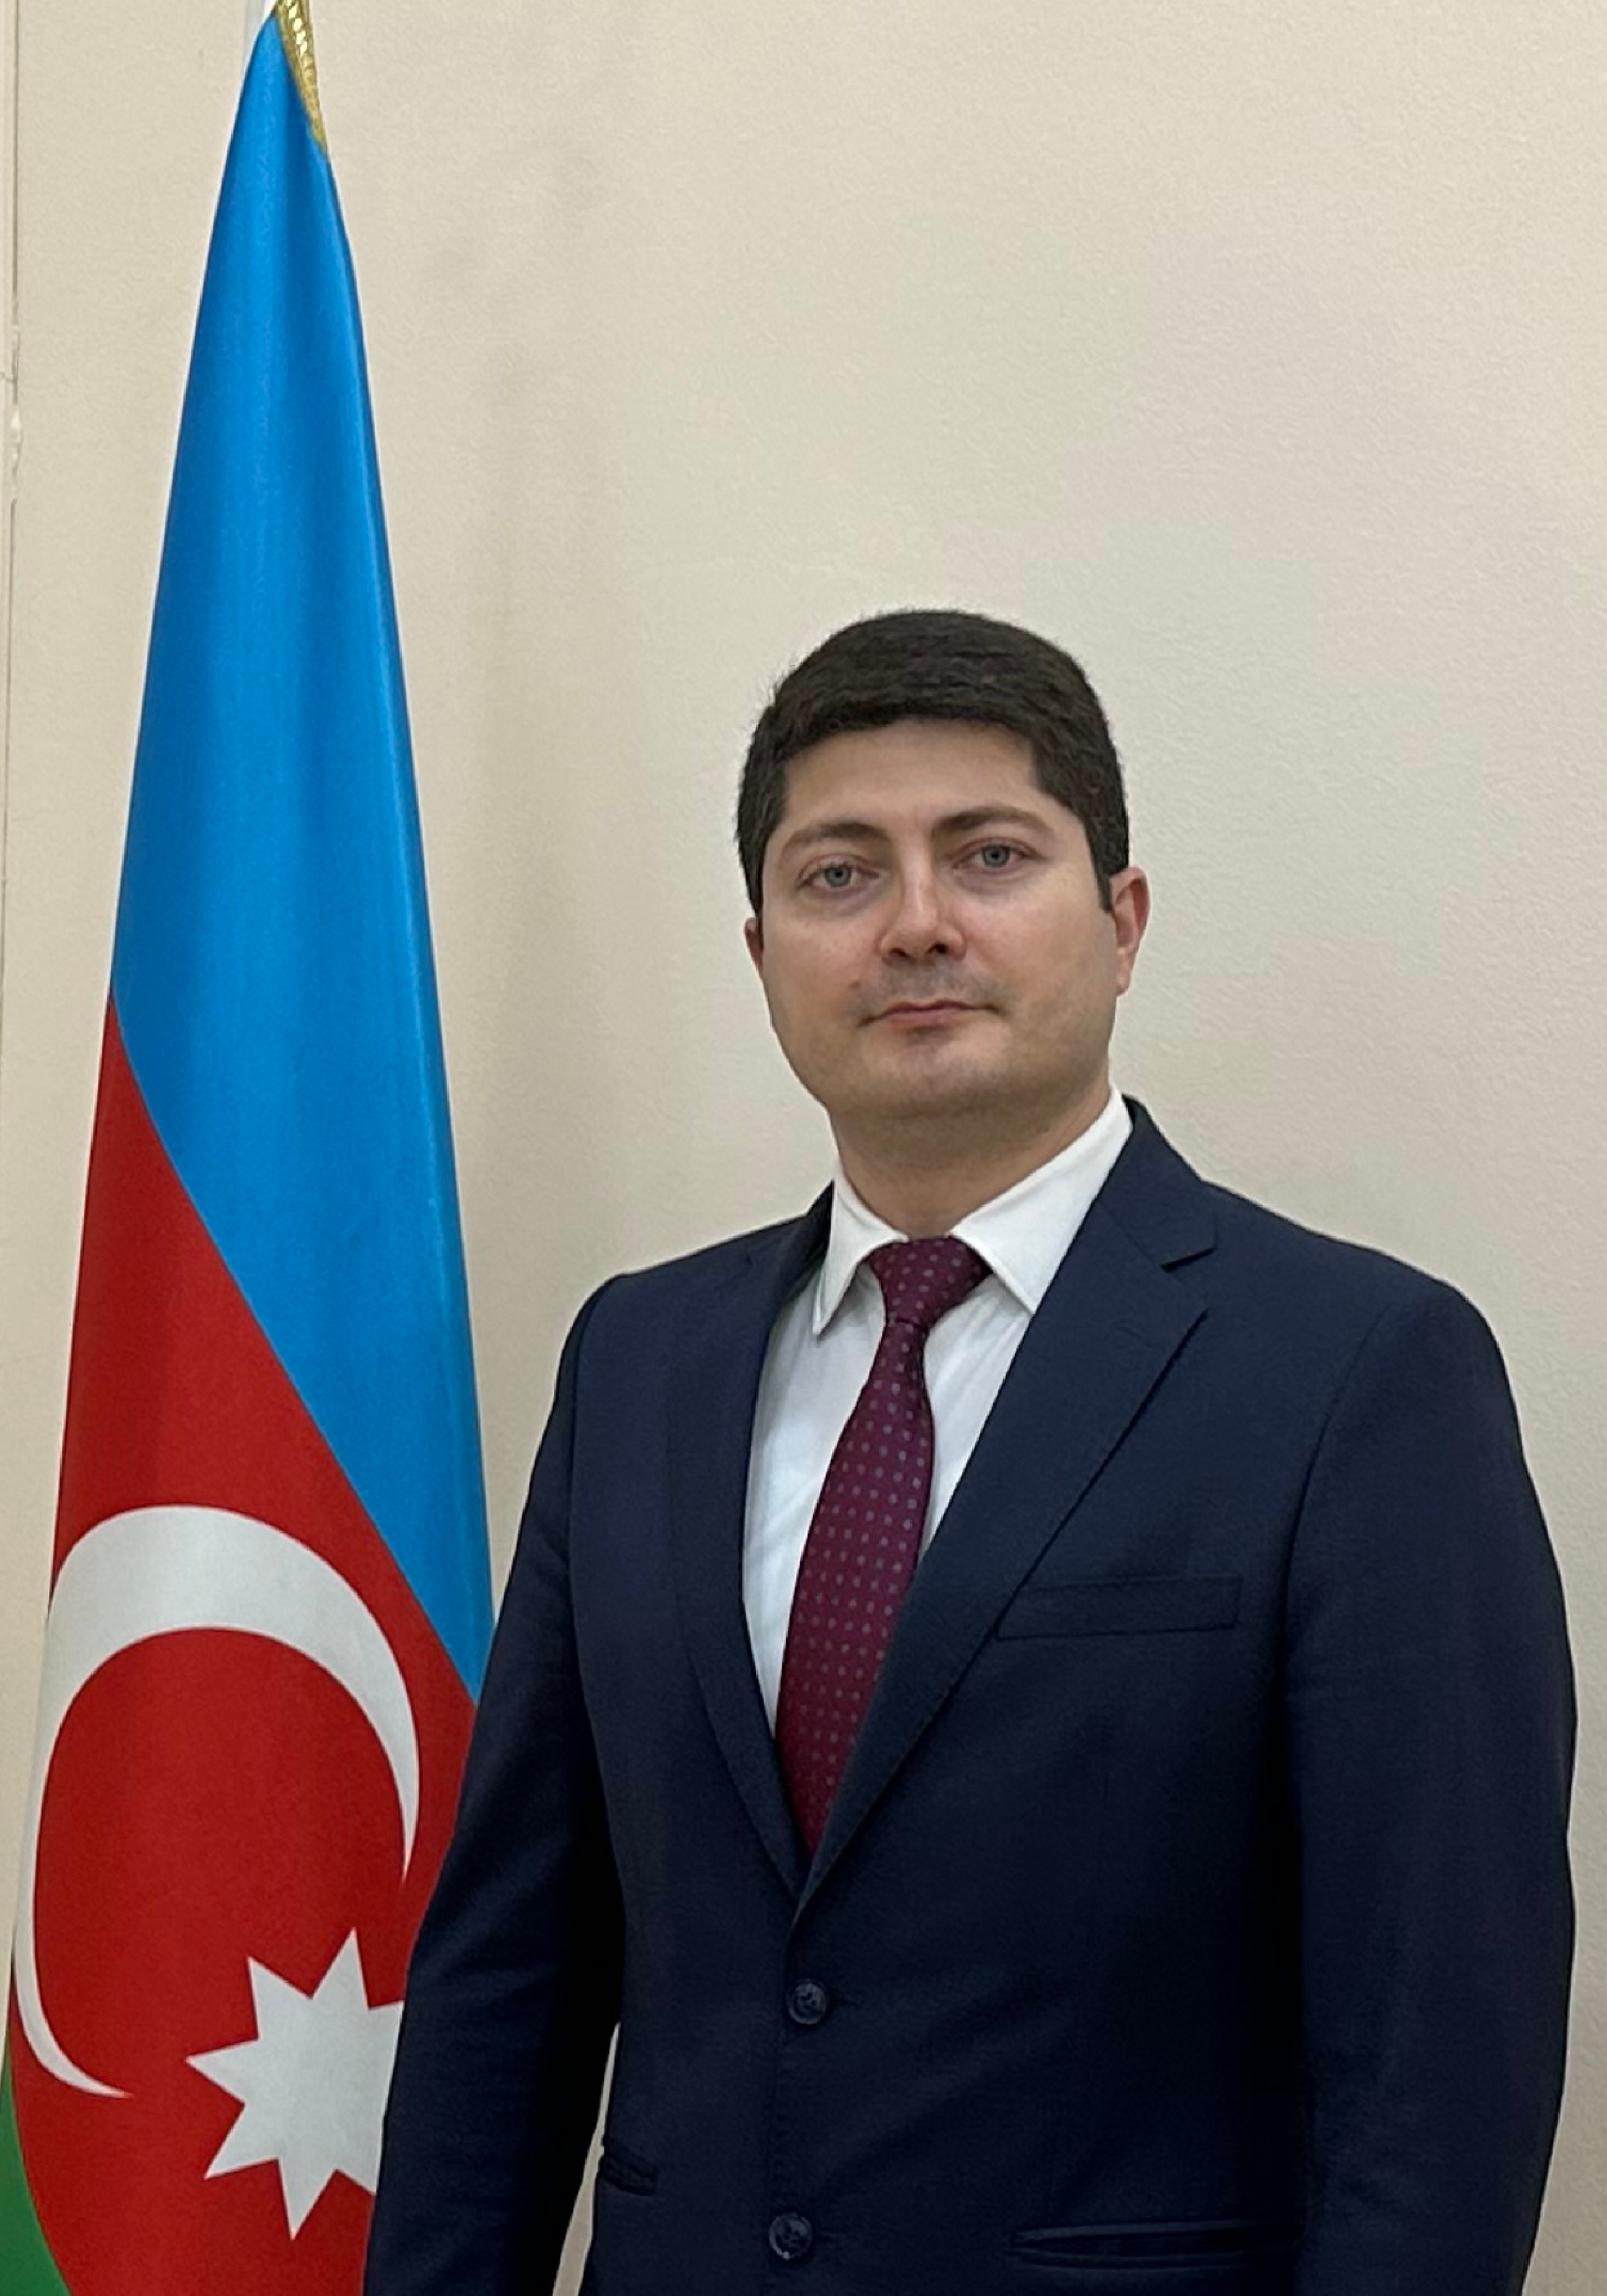 Samir Mahmudov